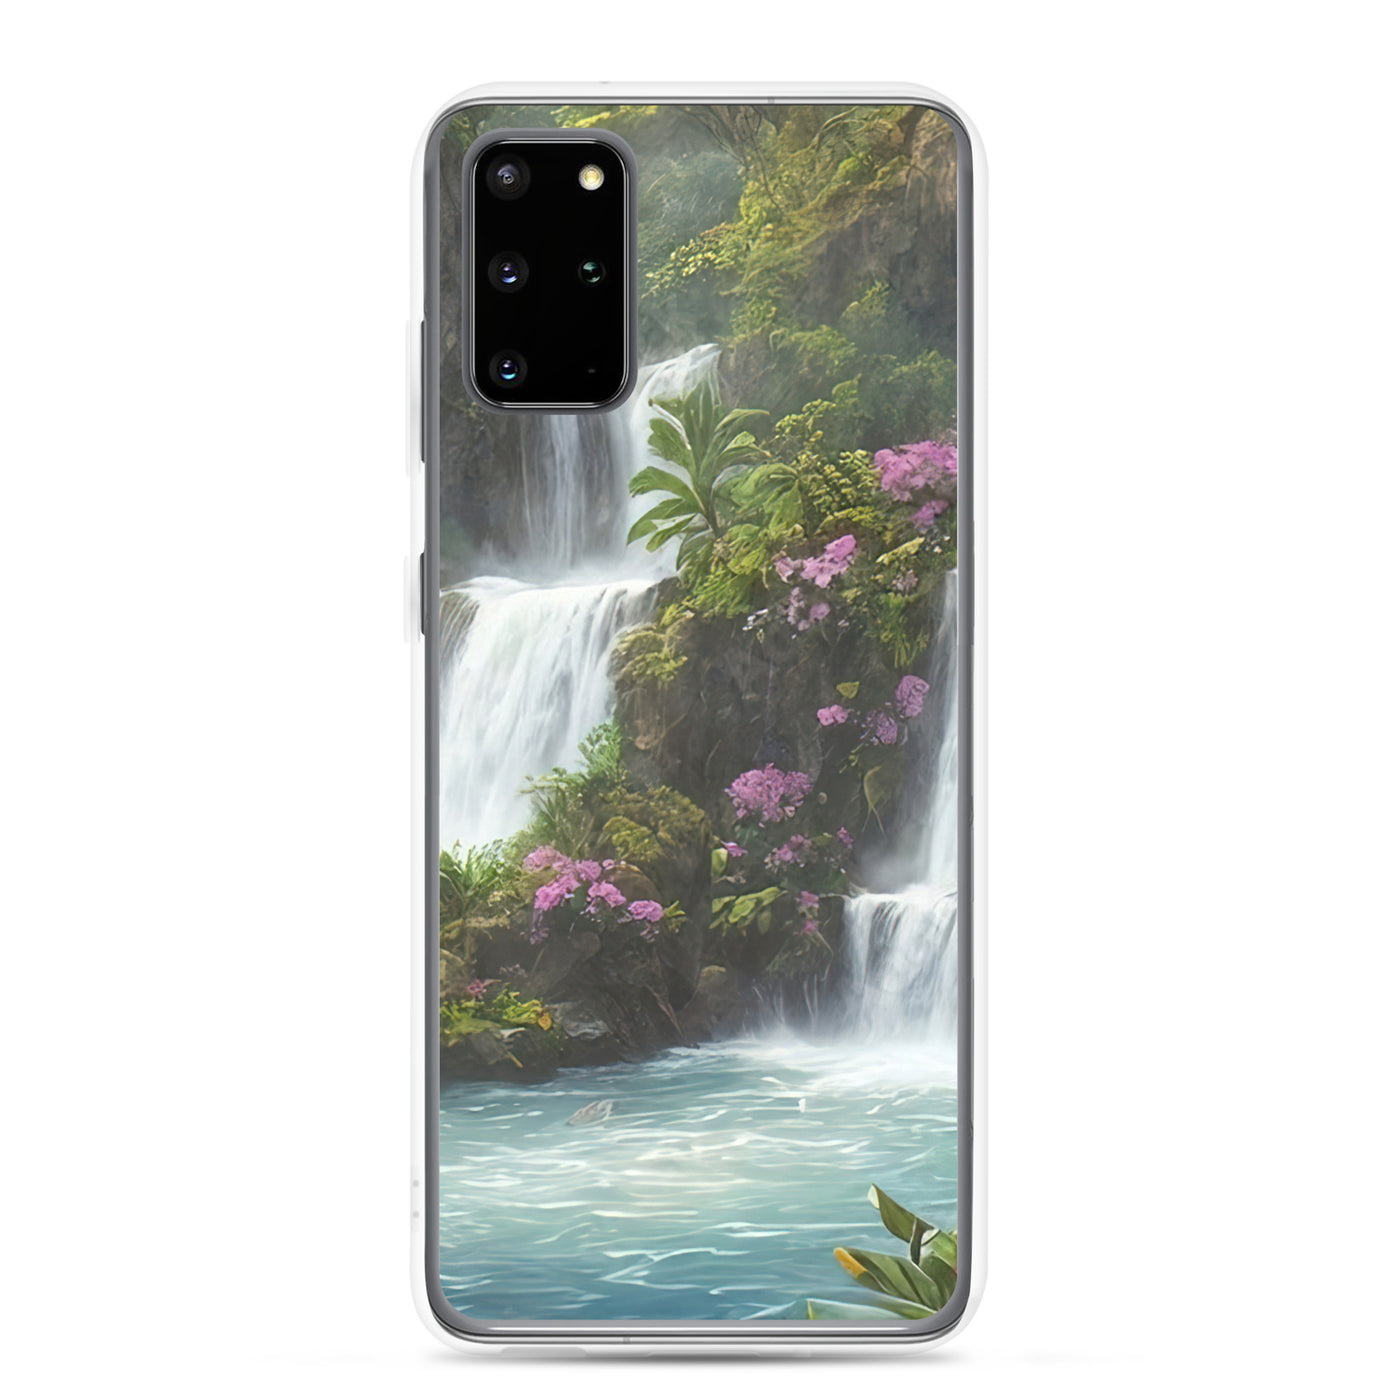 Wasserfall im Wald und Blumen - Schöne Malerei - Samsung Schutzhülle (durchsichtig) camping xxx Samsung Galaxy S20 Plus